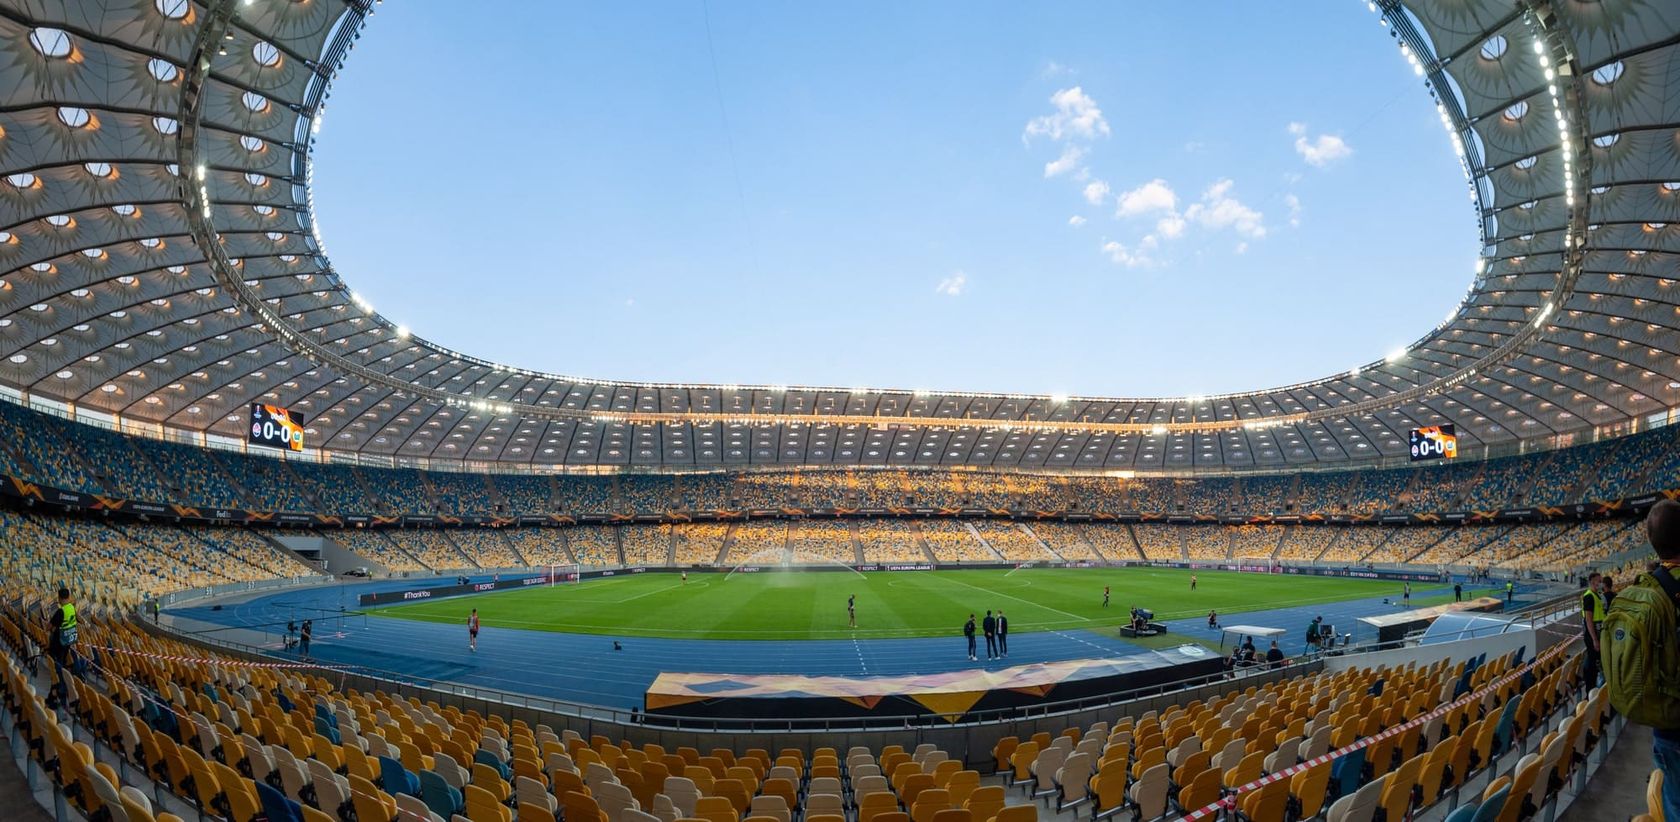 Hecho con acero y pasión: los siete majestuosos estadios del mundo